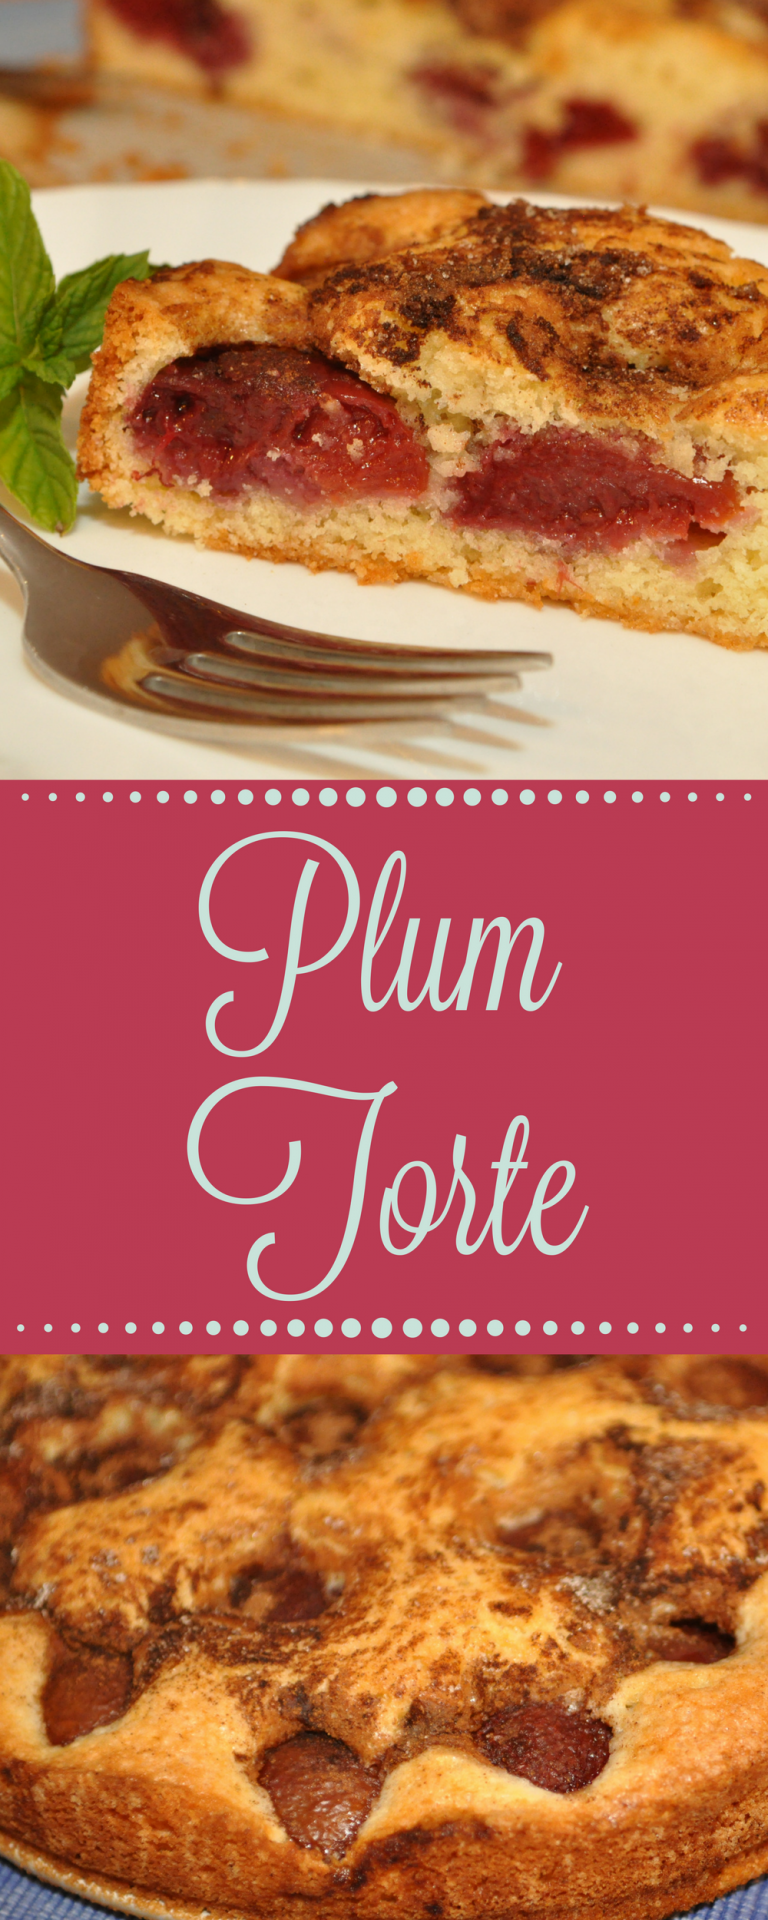 Plum Torte Recipe